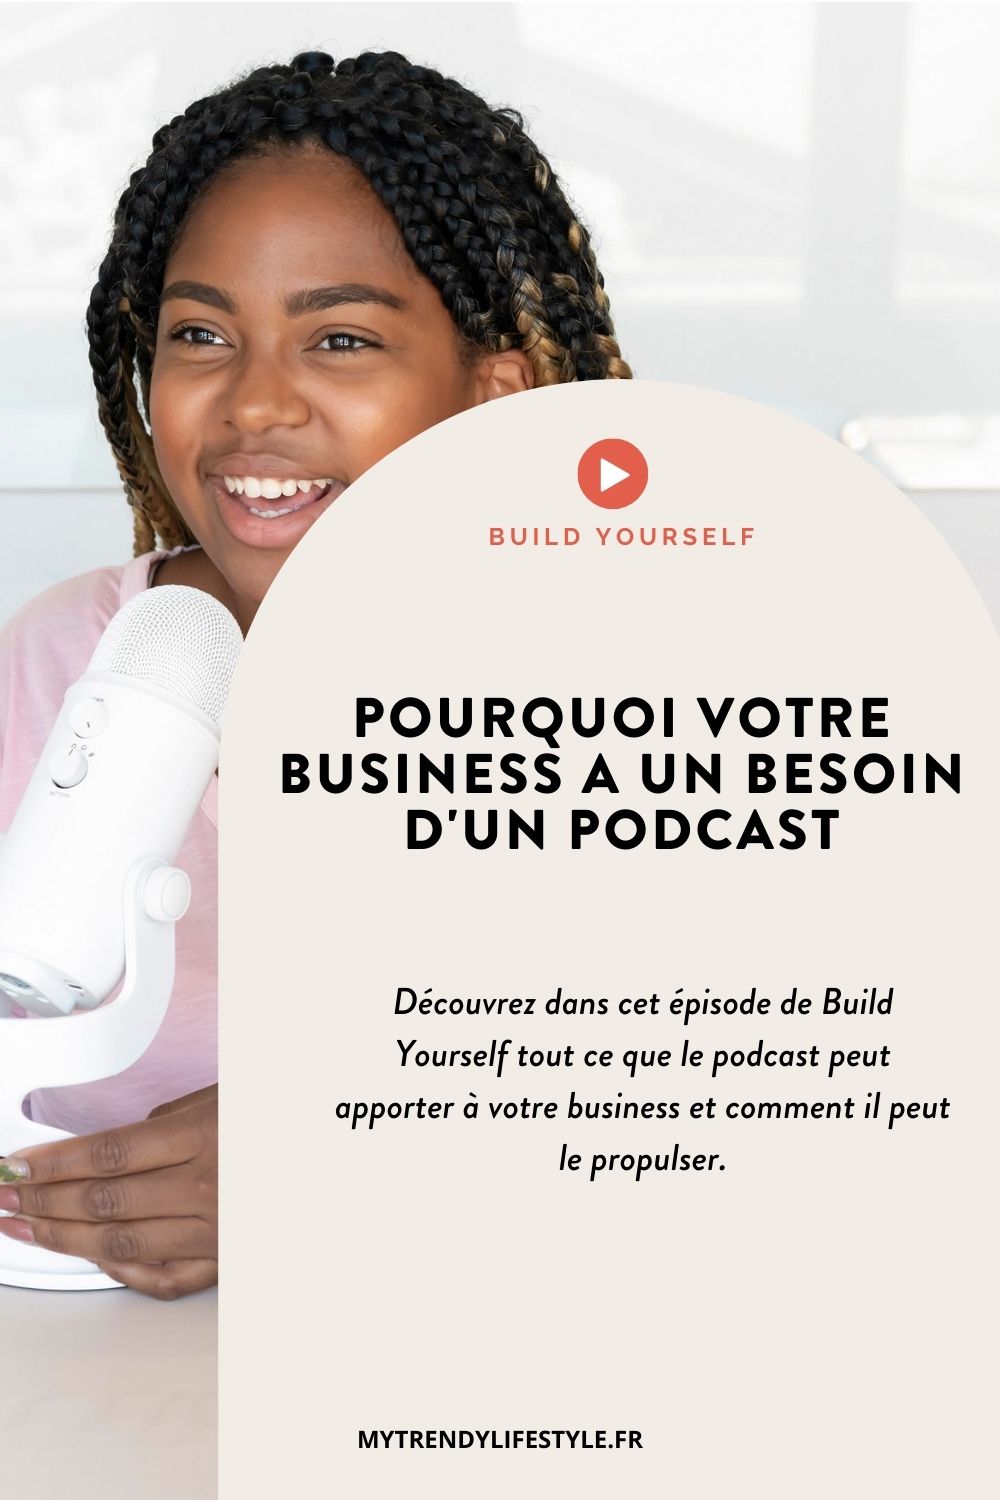 Découvrez dans cet épisode de Build Yourself tout ce que le podcast peut apporter à votre business.